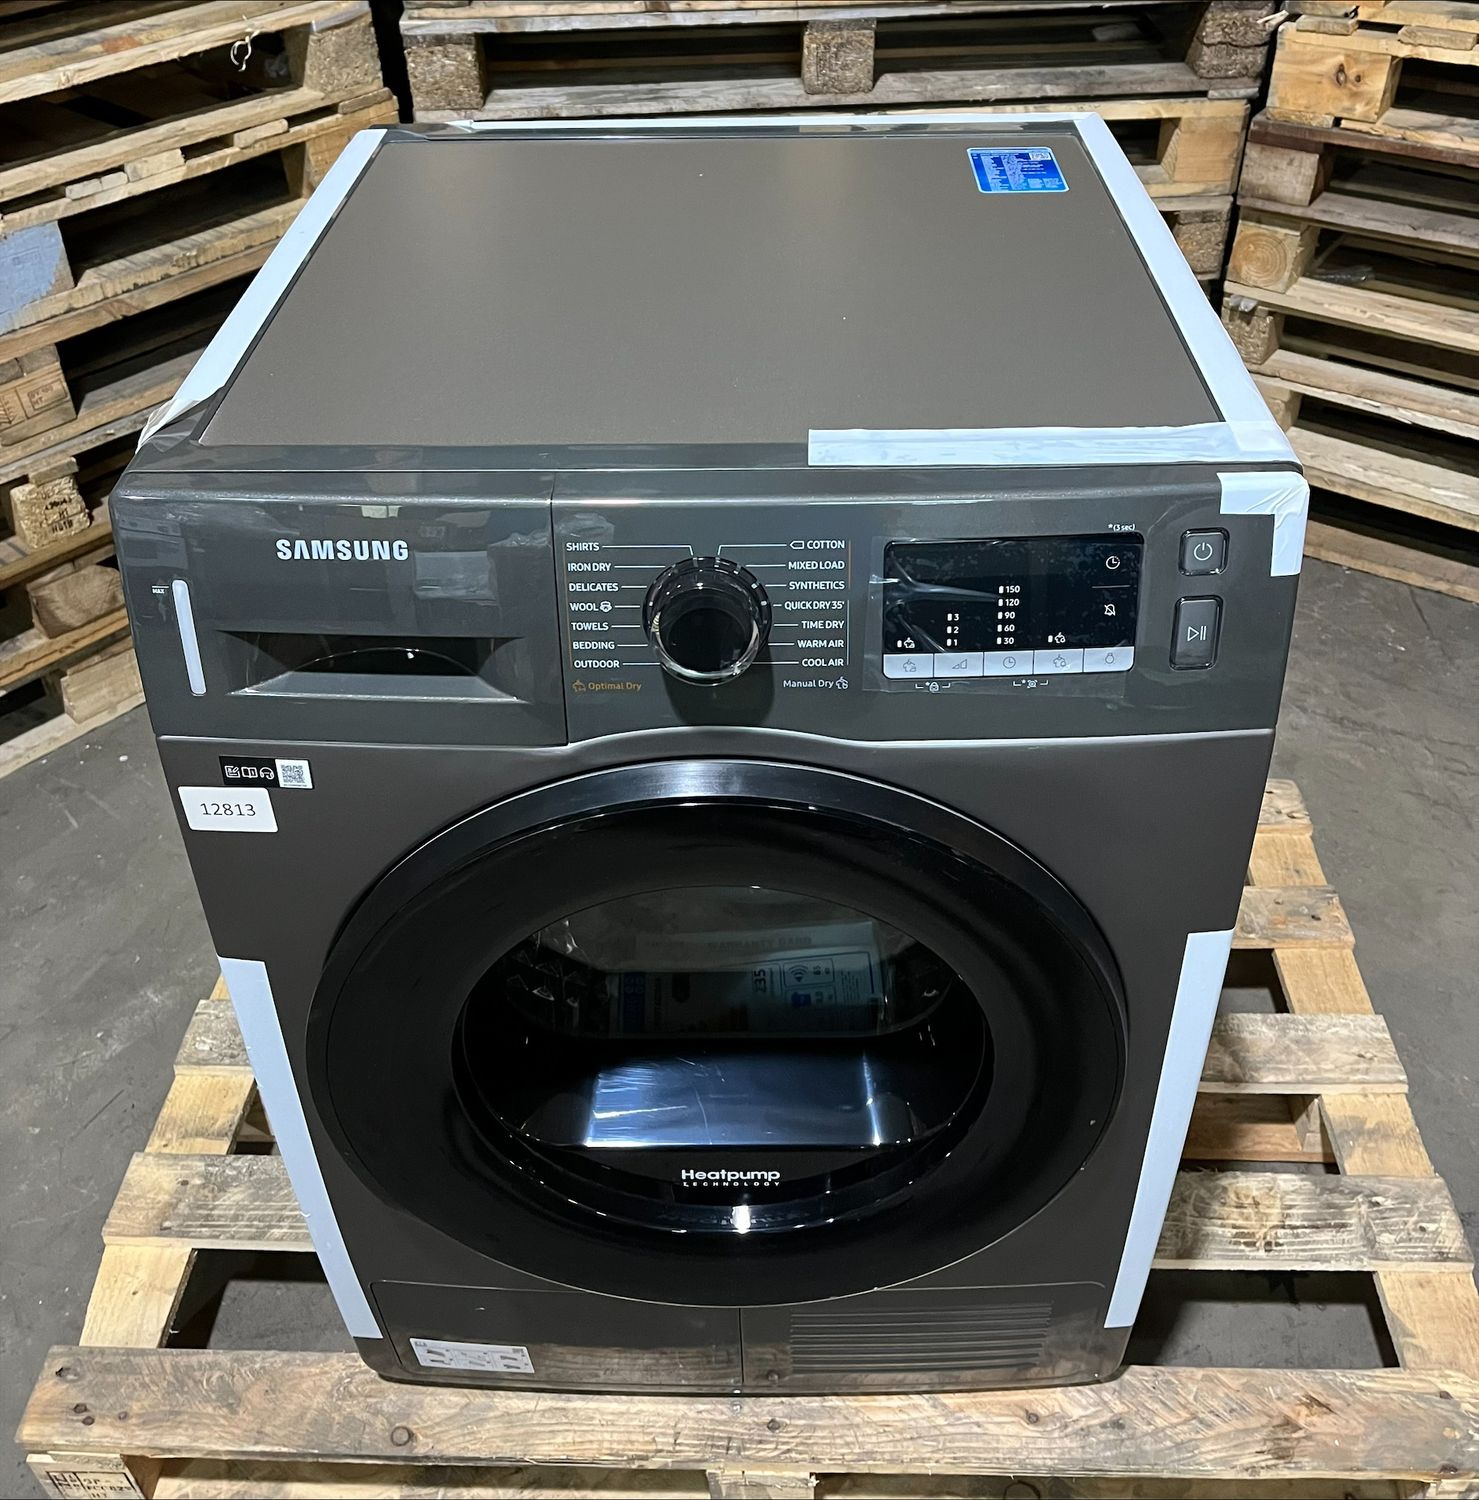 SAMSUNG Series 5 DV80TA040AX 8 KG Heat Pump Tumble Dryer #12813